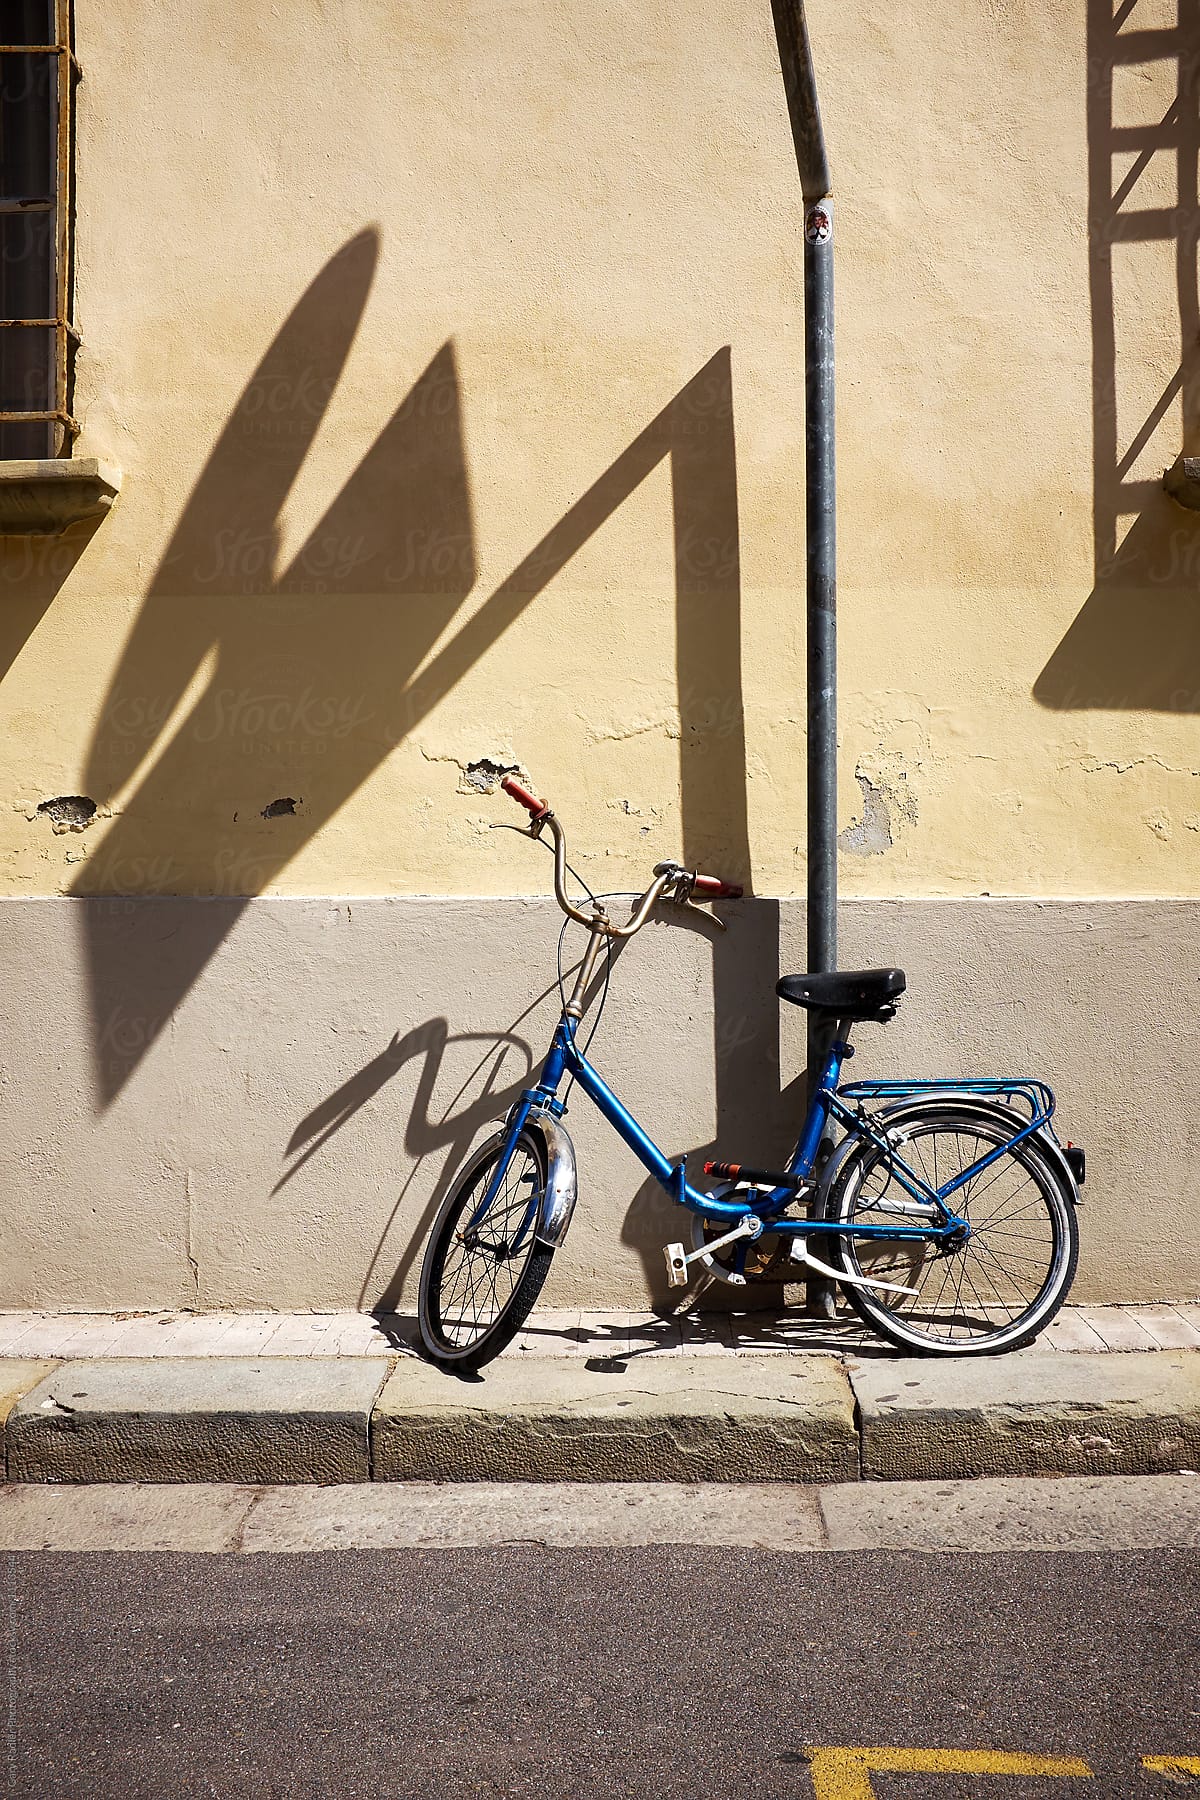 Bike Parked in Italian Street